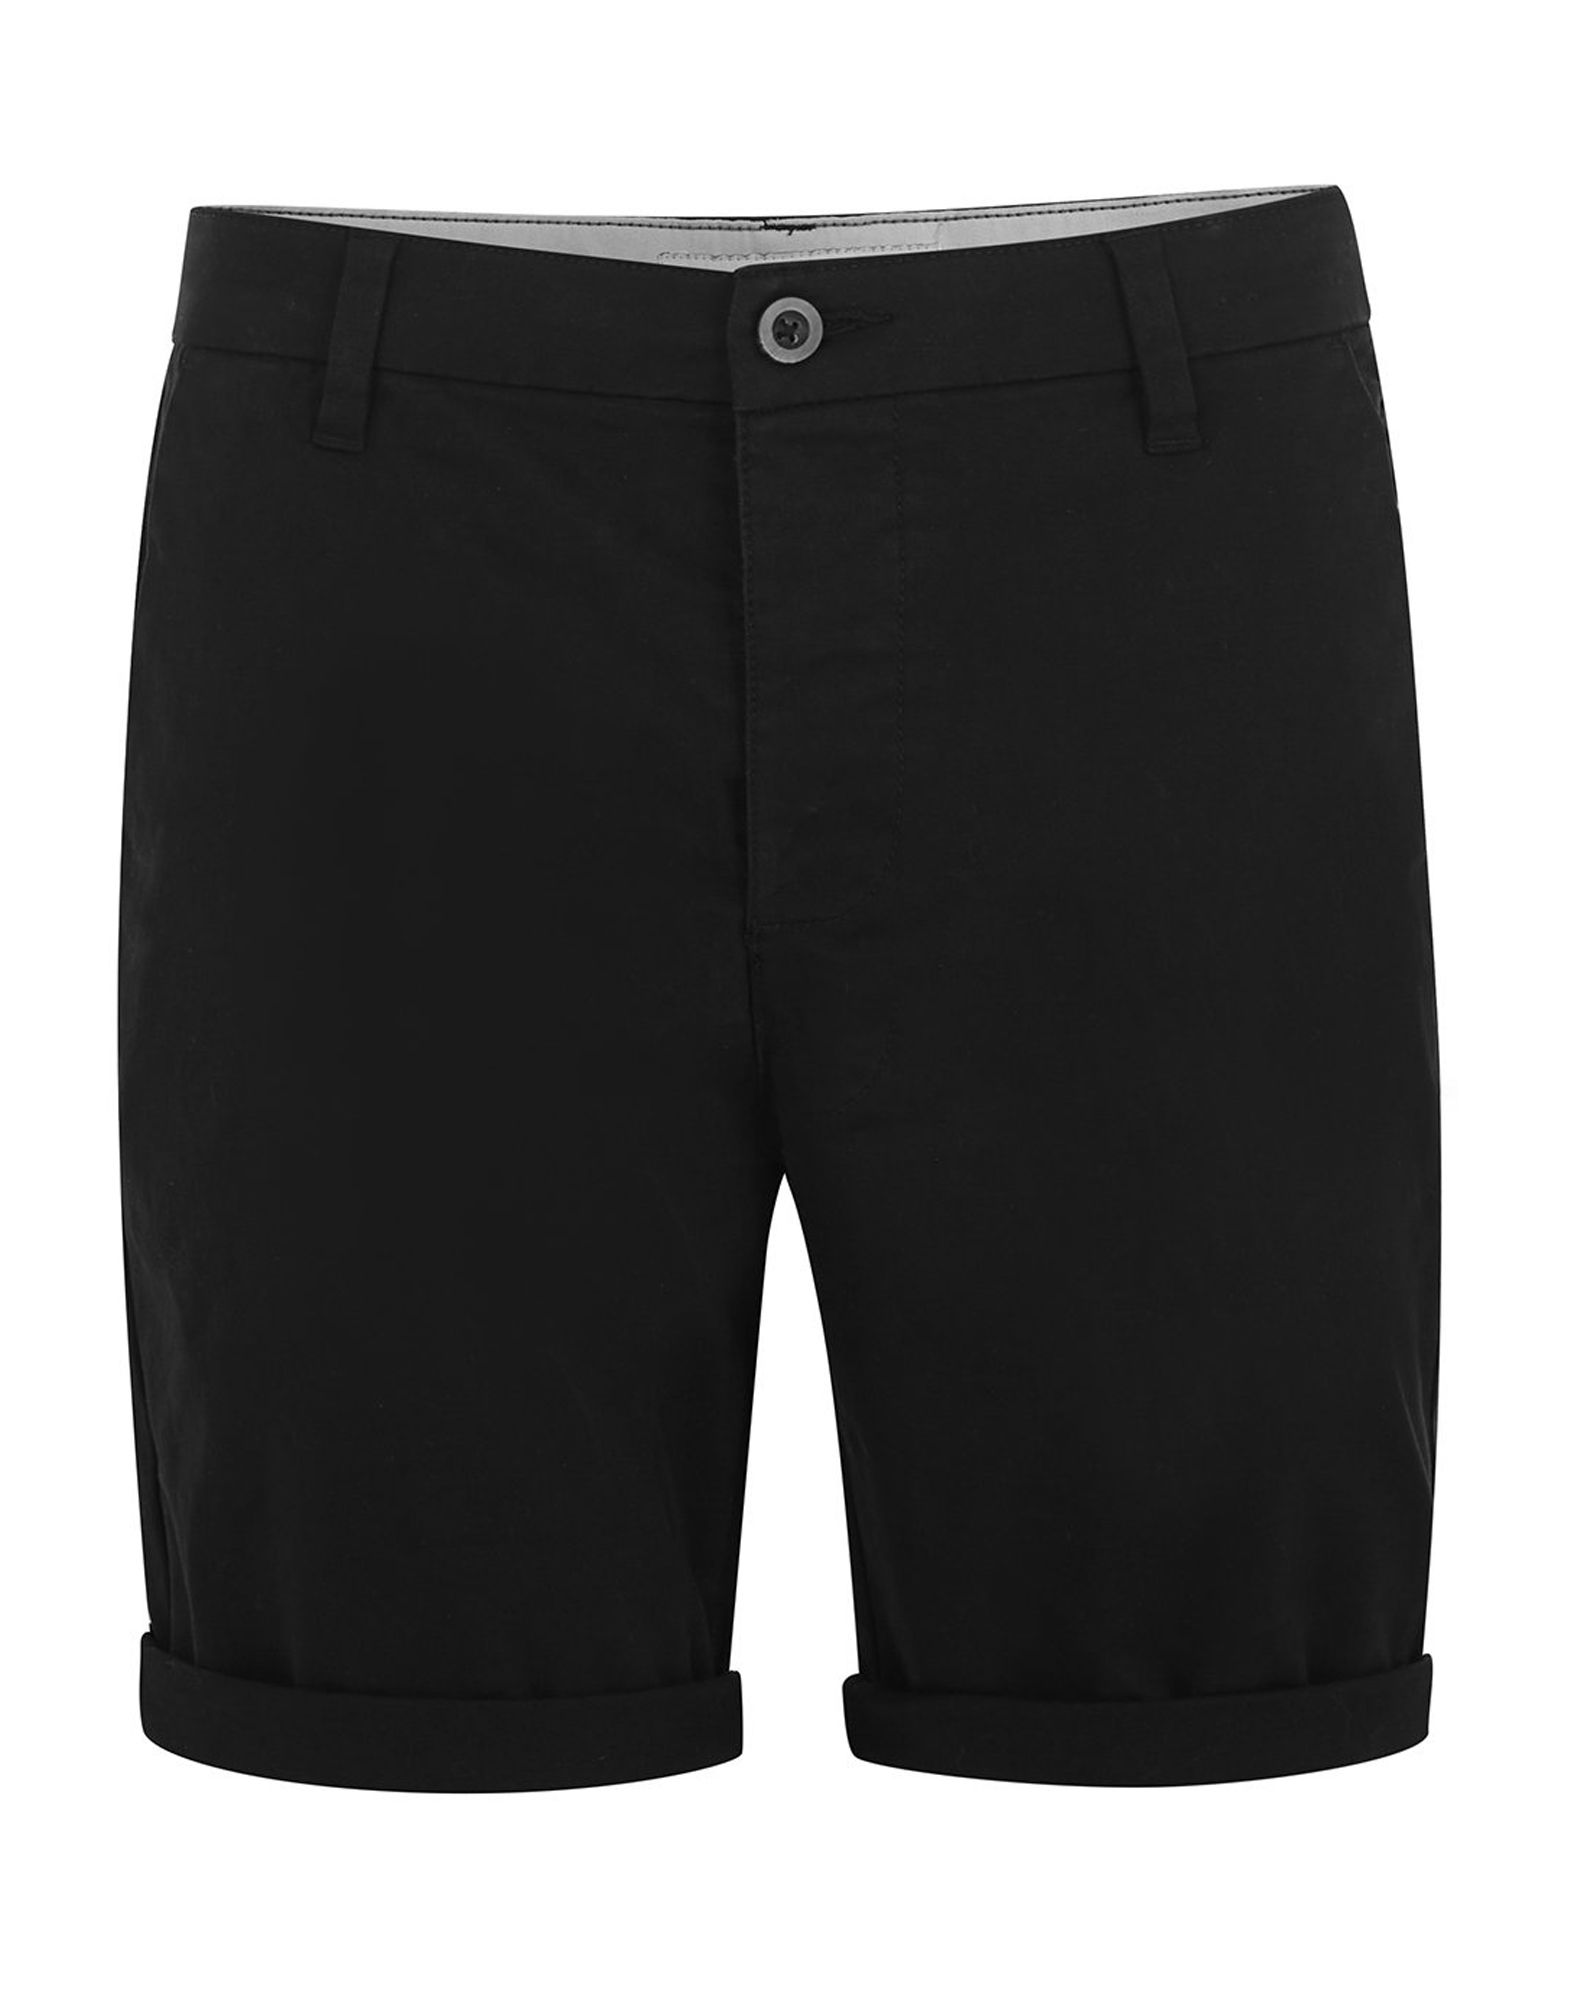 《限定セール中》TOPMAN メンズ バミューダパンツ ブラック 28 コットン 98% / ポリウレタン 2% Black Stretch Skinny Fit Chino Shorts